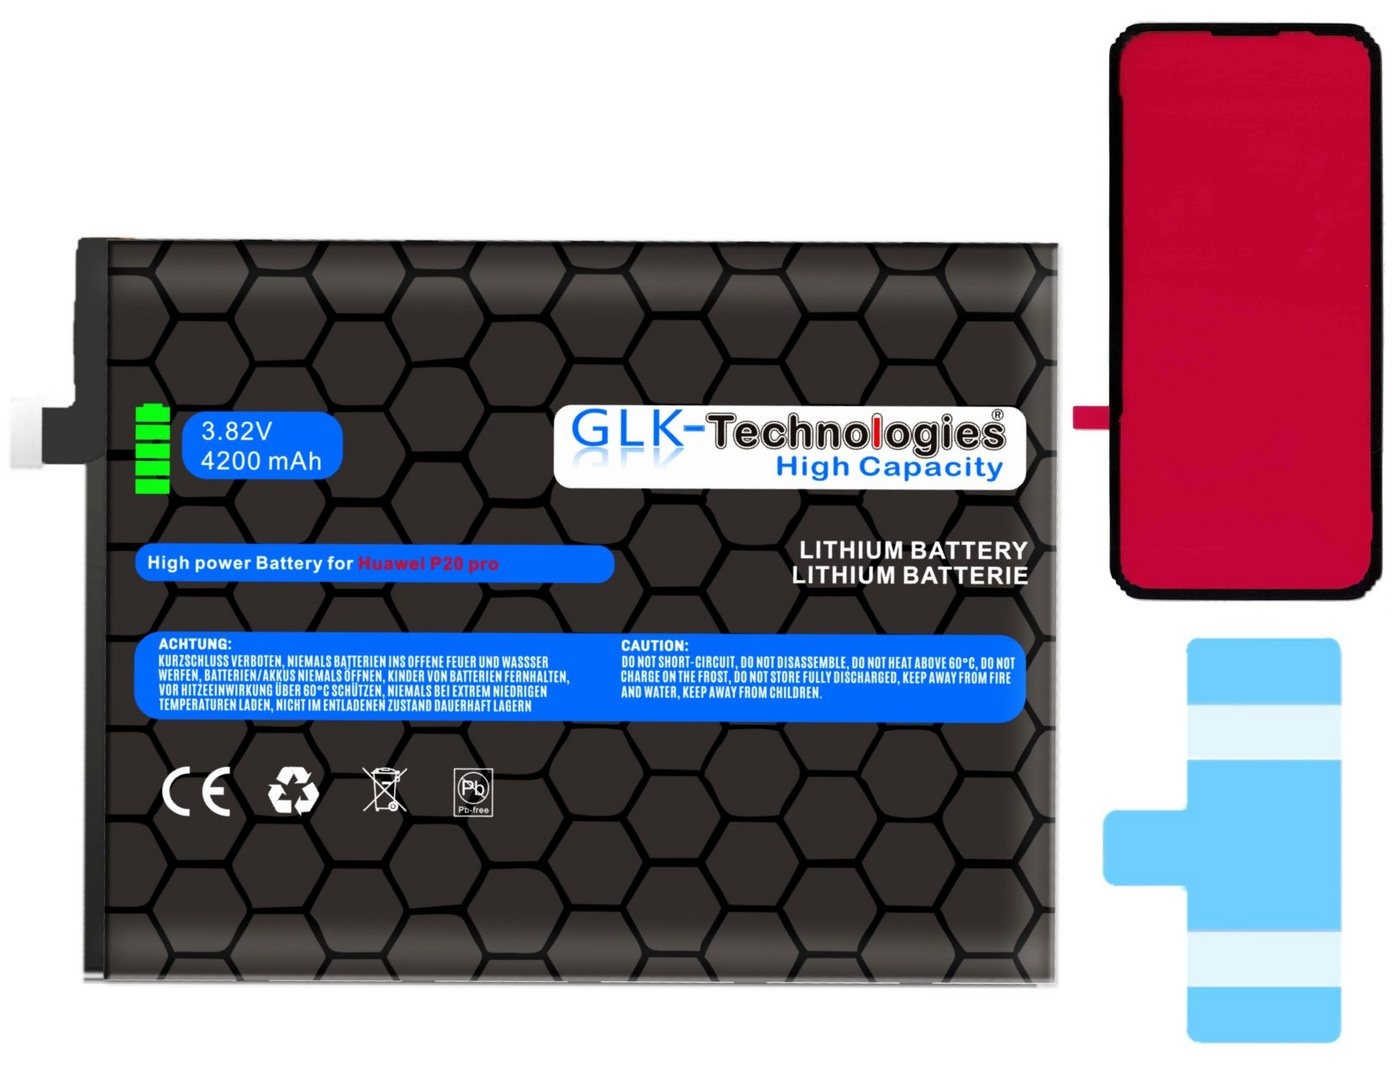 GLK-Technologies High Power Ersatz Akku für Huawei Mate 10 PRO Mate 10 P20 PRO inkl. 2X Klebebandsätze Smartphone-Akku 4200 mAh (3,8 V)